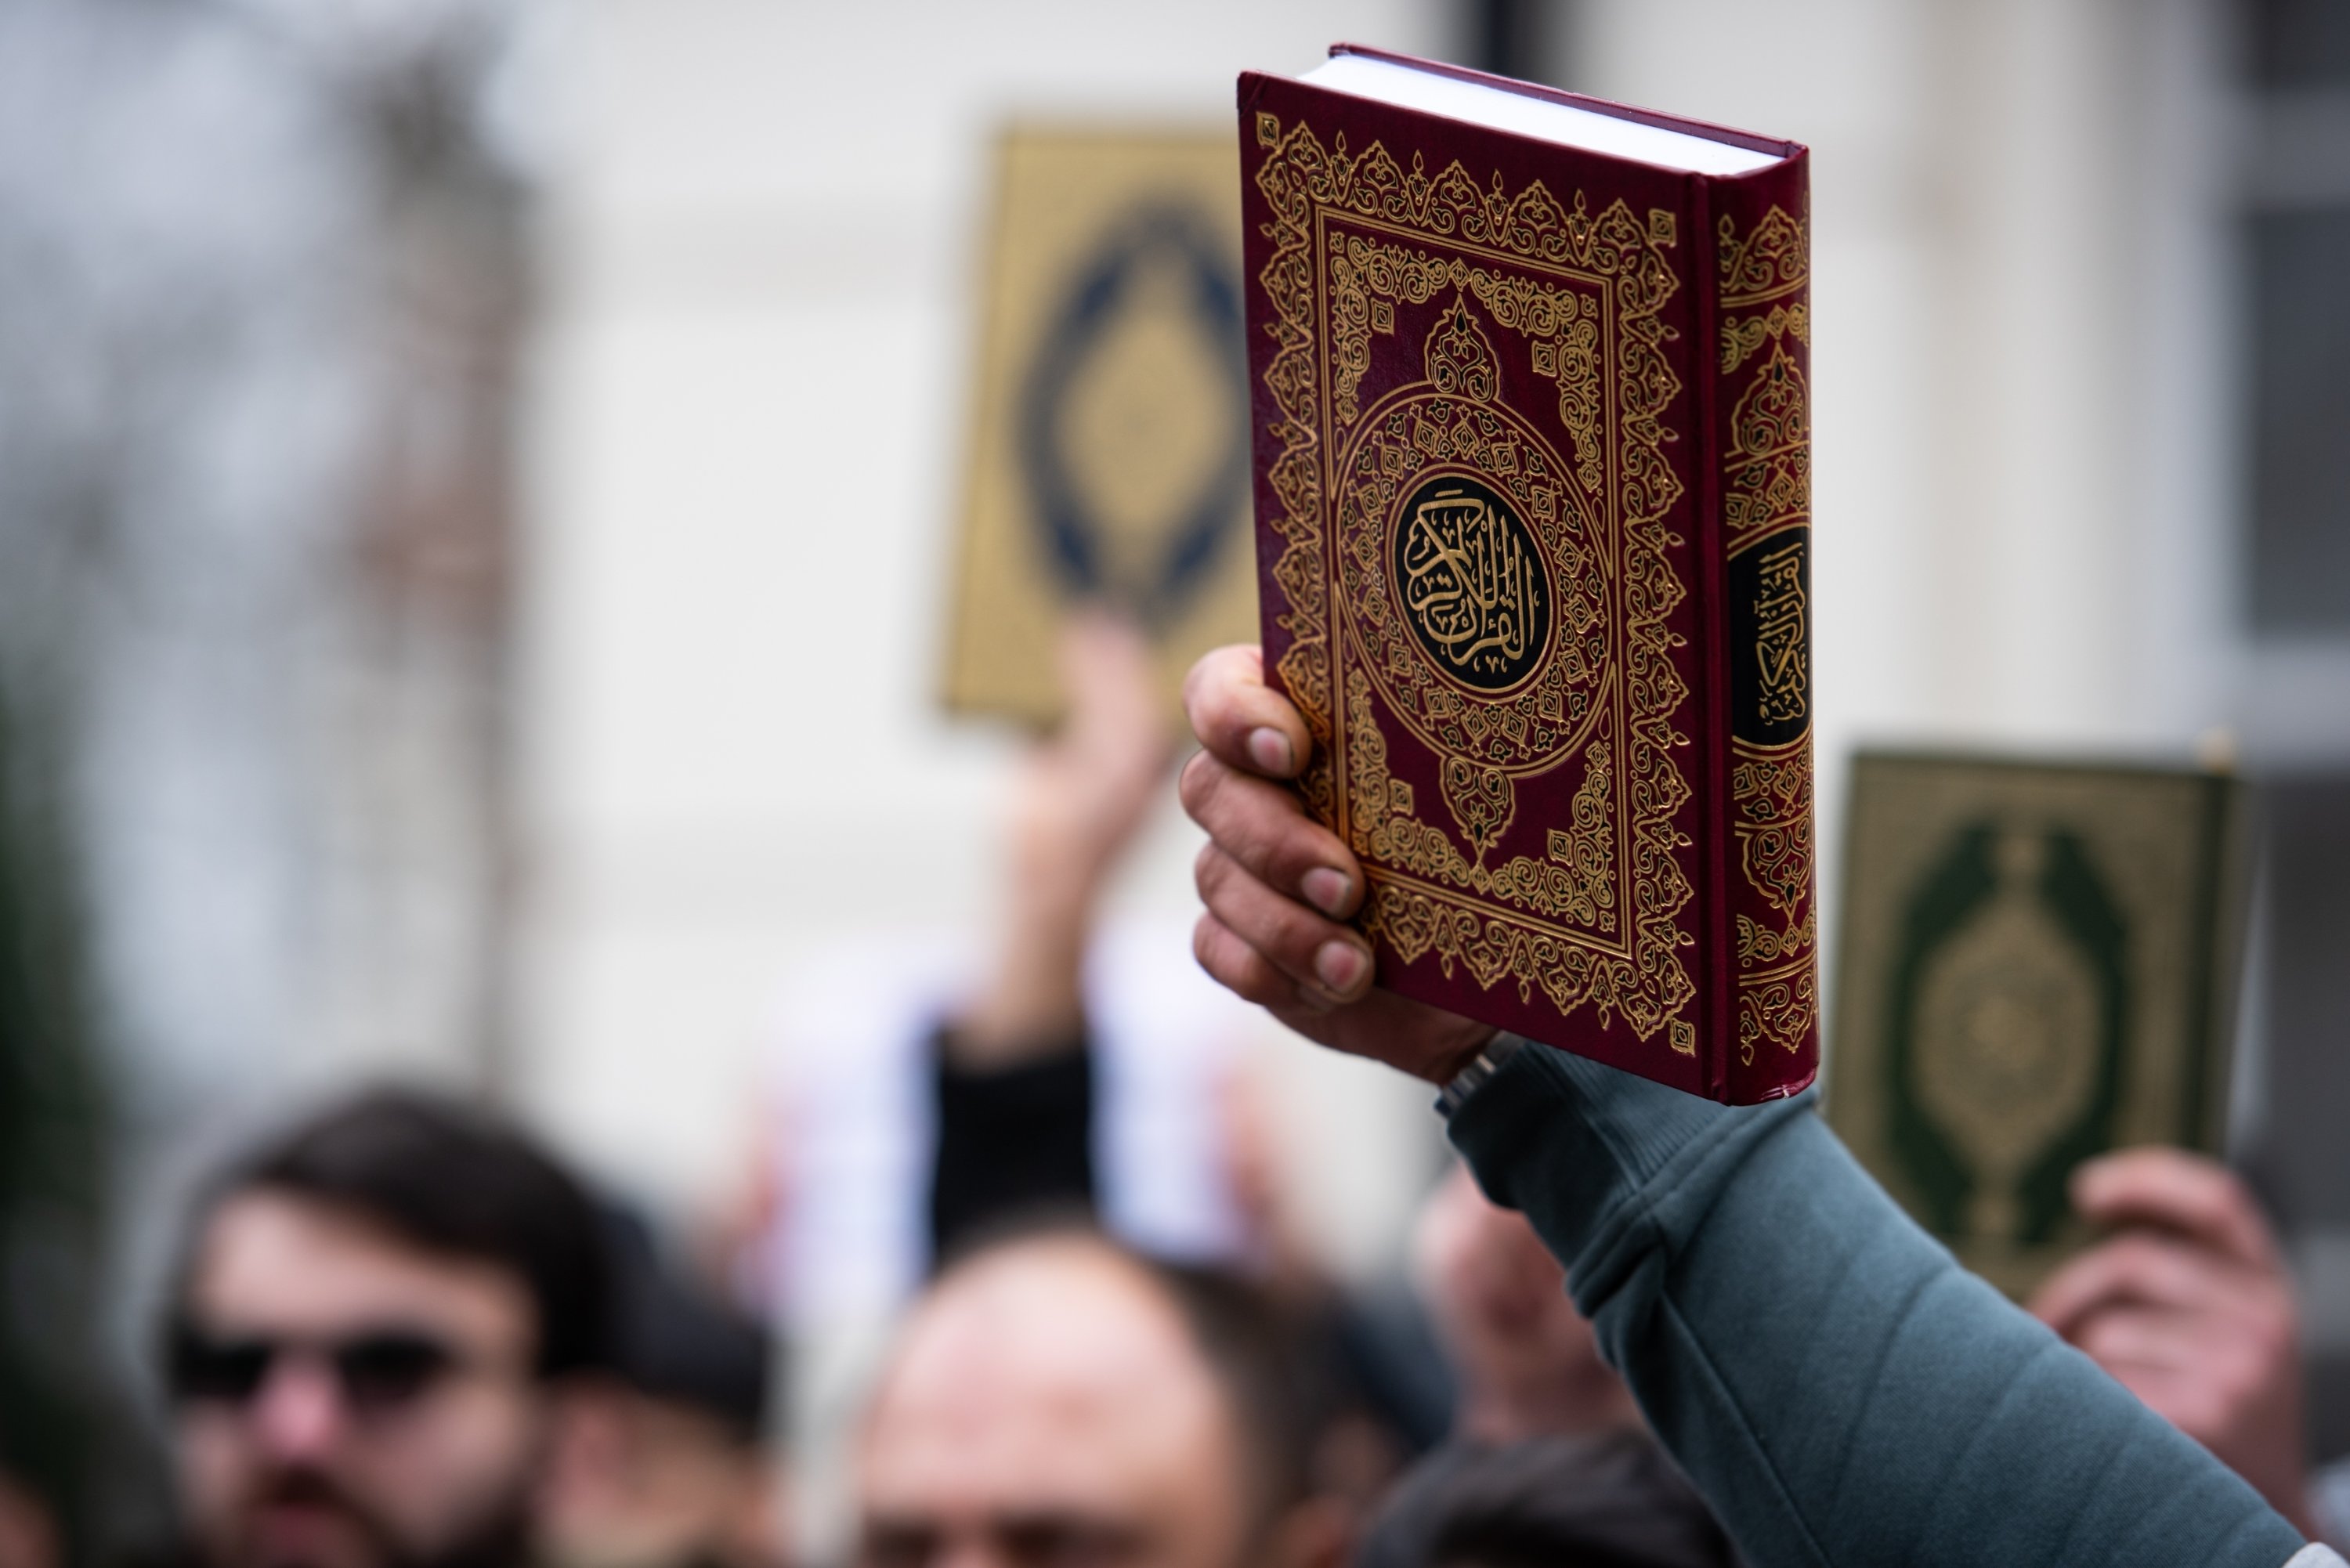 Denmark FM speaks on Quran incidents